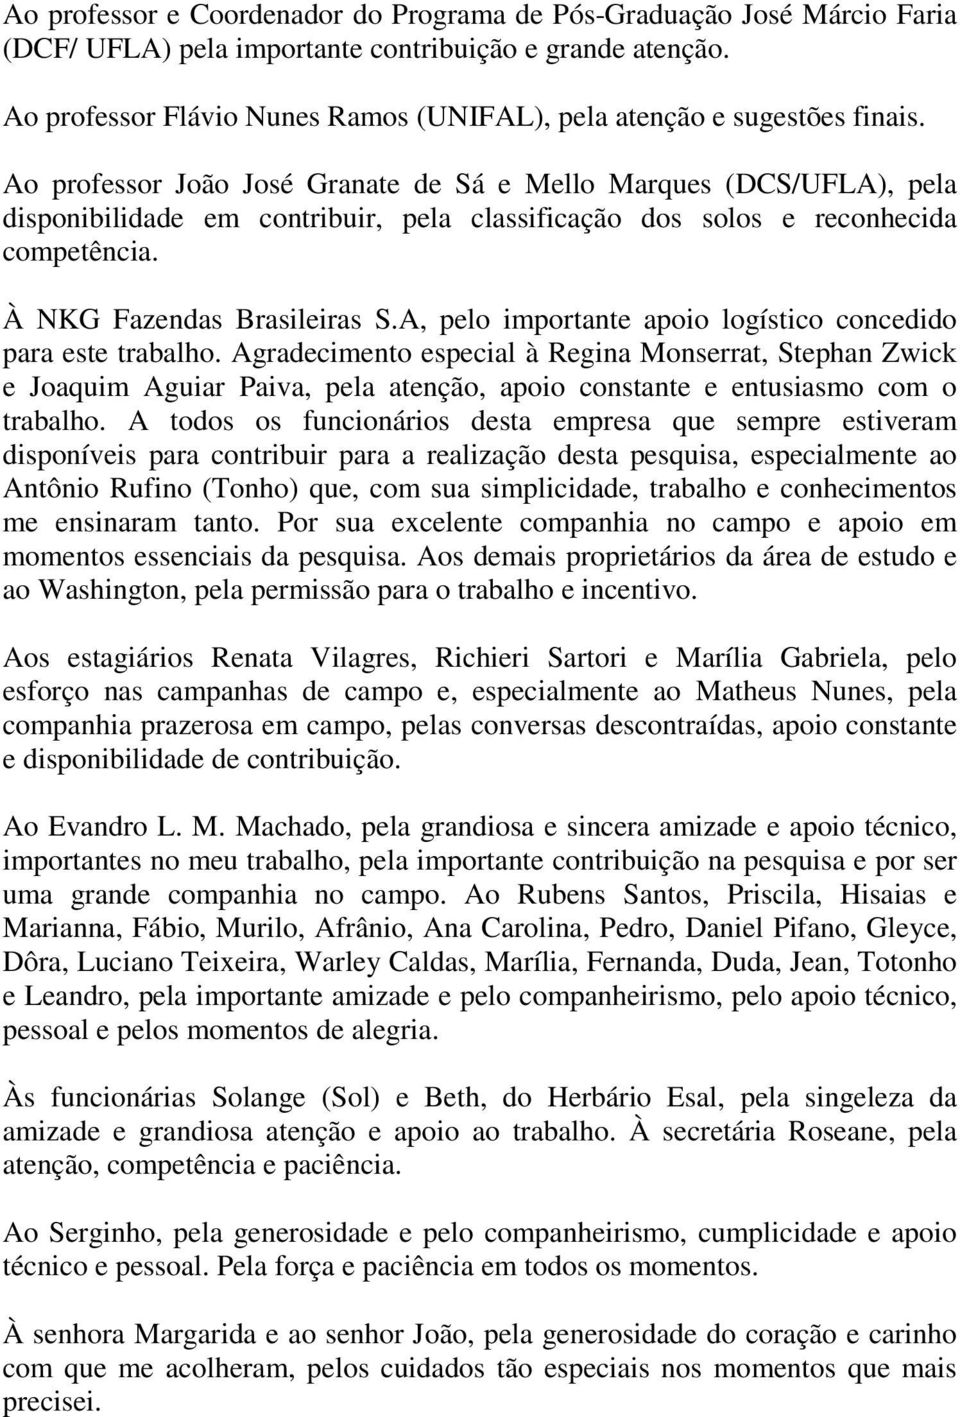 Ao professor João José Granate de Sá e Mello Marques (DCS/UFLA), pela disponibilidade em contribuir, pela classificação dos solos e reconhecida competência. À NKG Fazendas Brasileiras S.